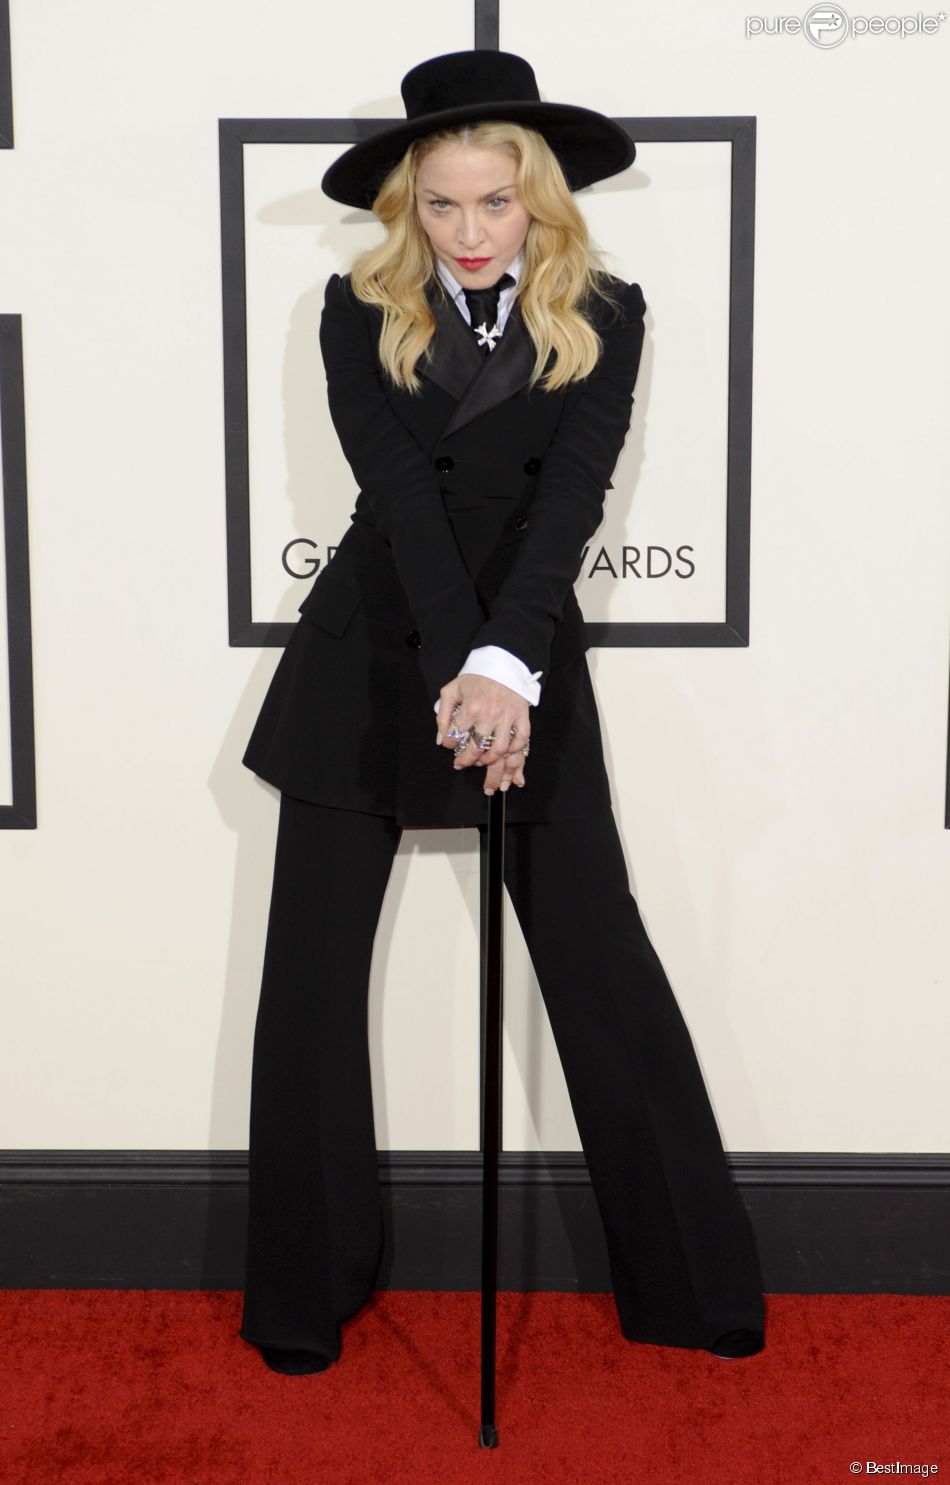  Madonna lors de la 56e c&amp;eacute;r&amp;eacute;monie des Grammy Awards &amp;agrave; Los Angeles, le 26 janvier 2014.  